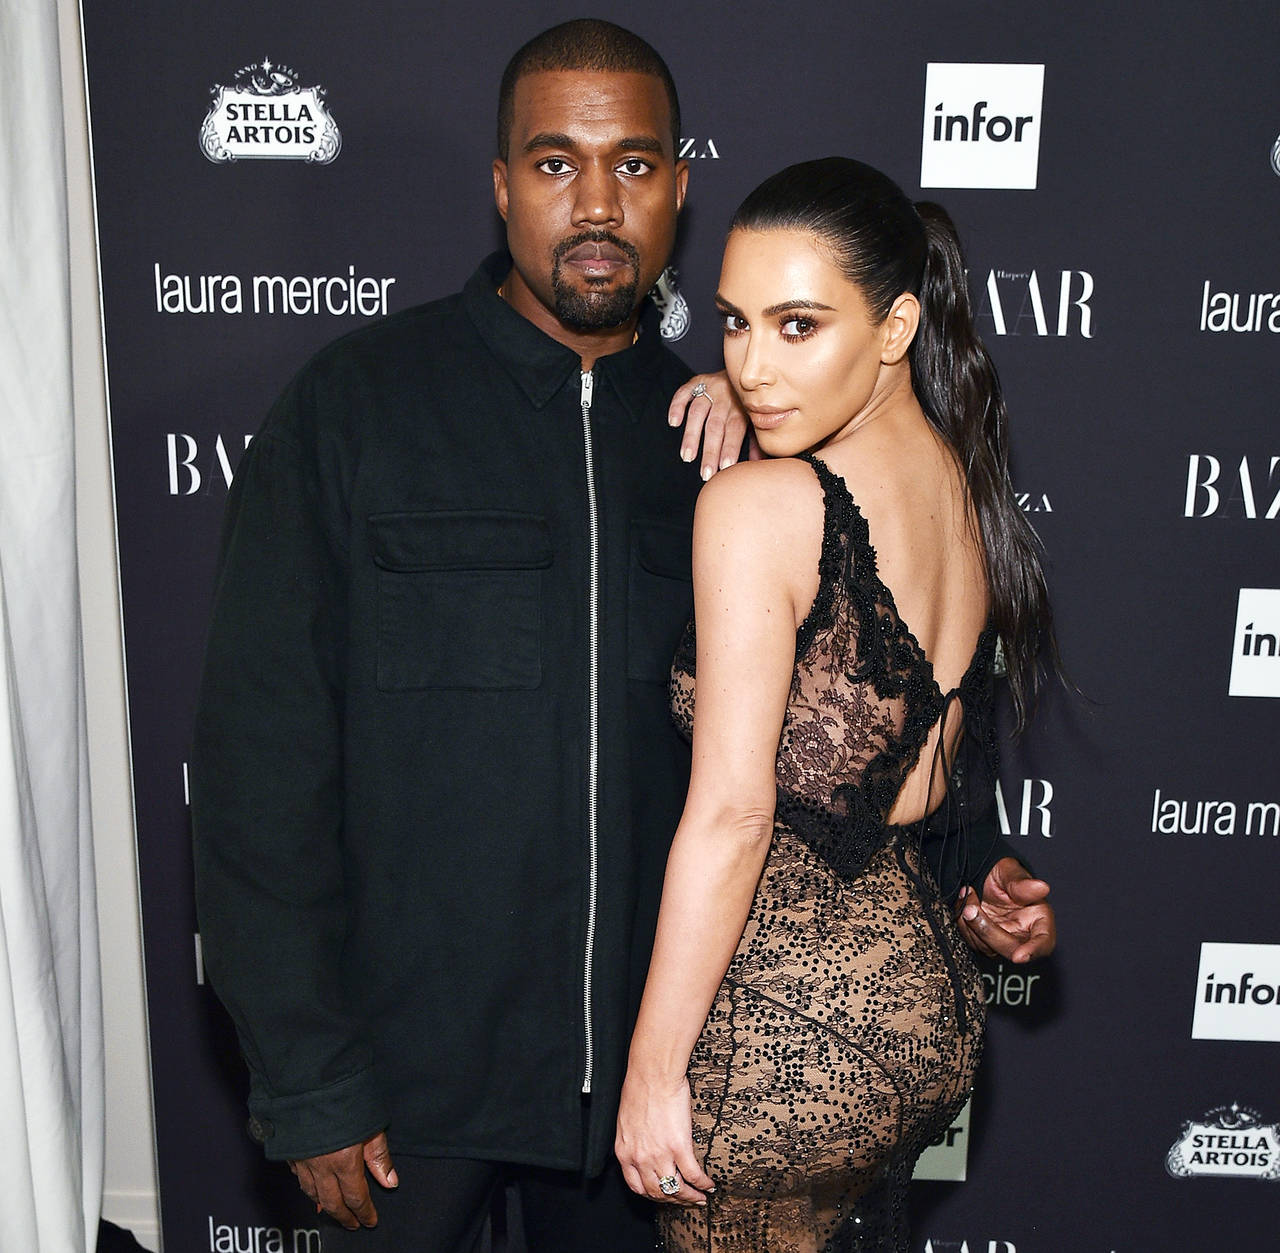 Agradecidos. Kim Kardashian y Kanye West anunciaron que tuvieron una niña por gestación subrogada.